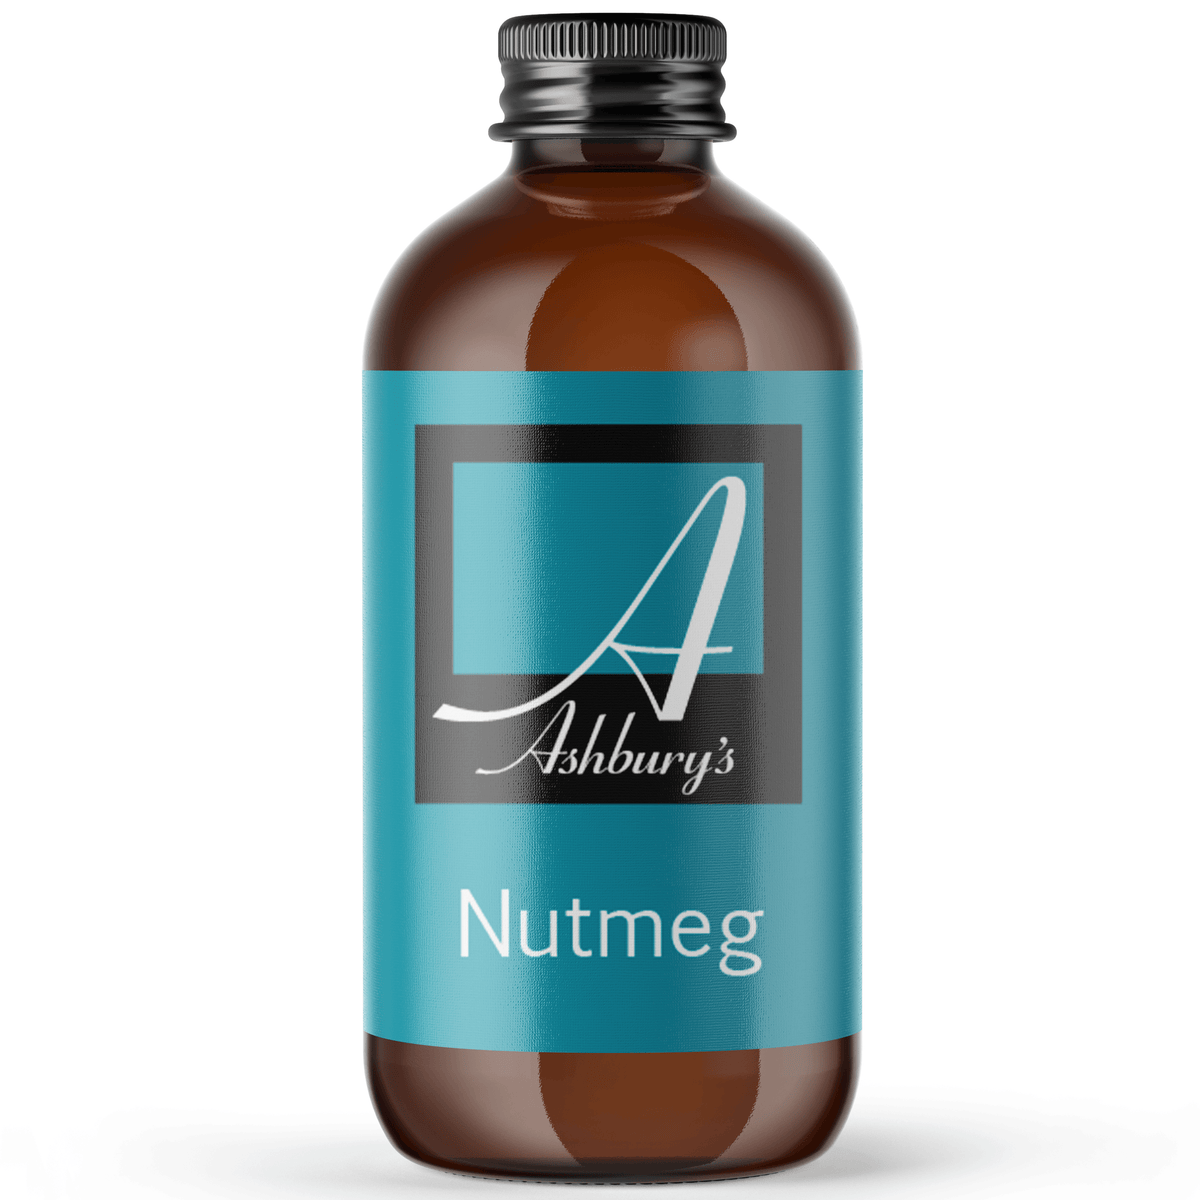 Nutmeg (Myristica fragrance)